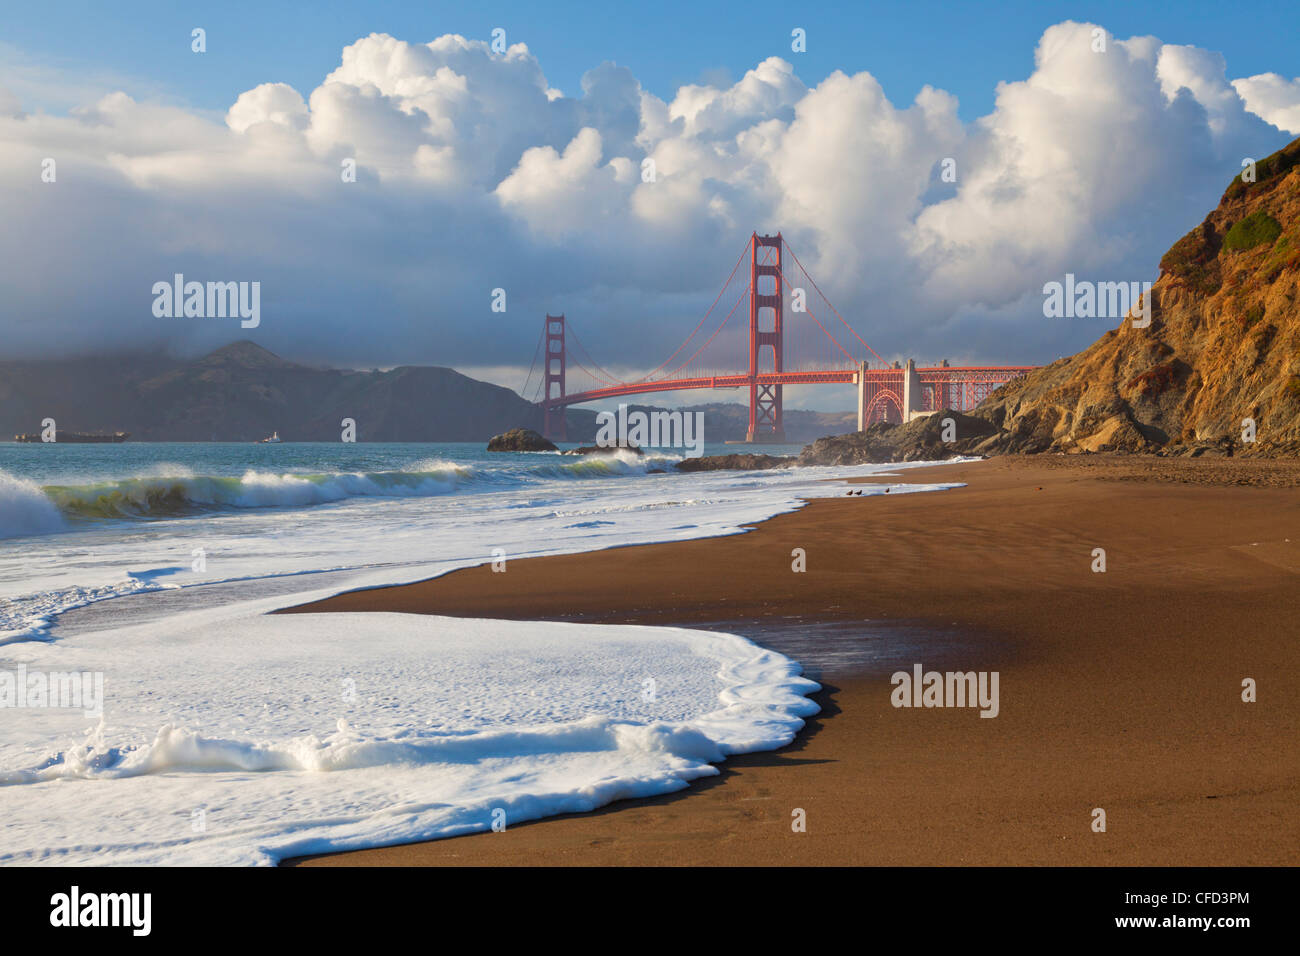 Il Golden Gate Bridge, che collega la città di San Francisco con Marin County, San Francisco, California, Stati Uniti d'America Foto Stock